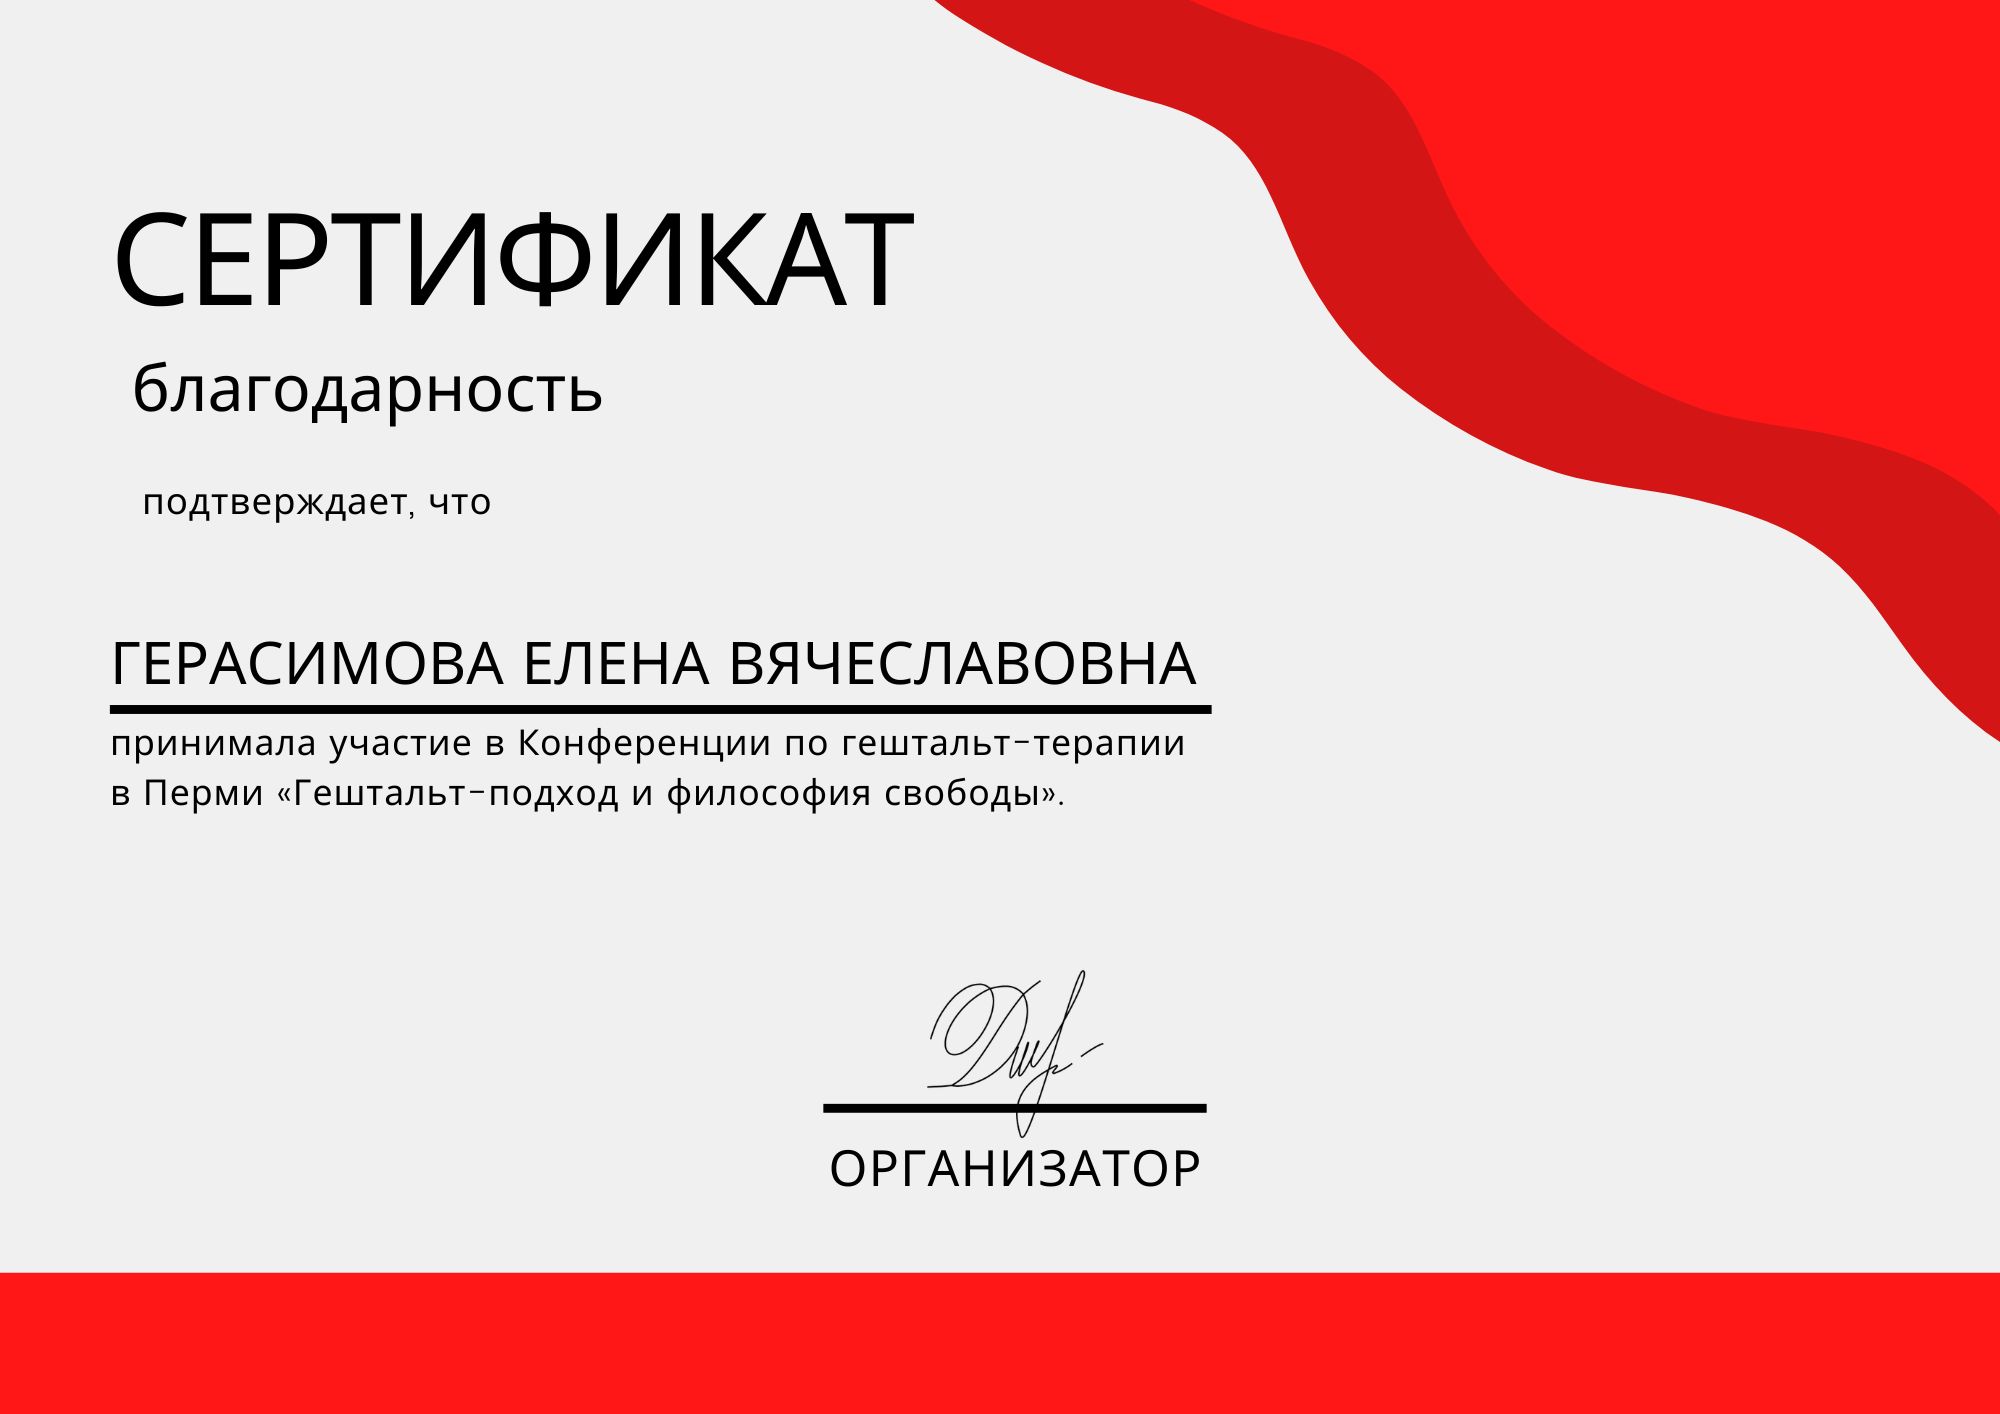 Фотография сертификата Герасимовой Елены Вячеславовны за участия в конференции